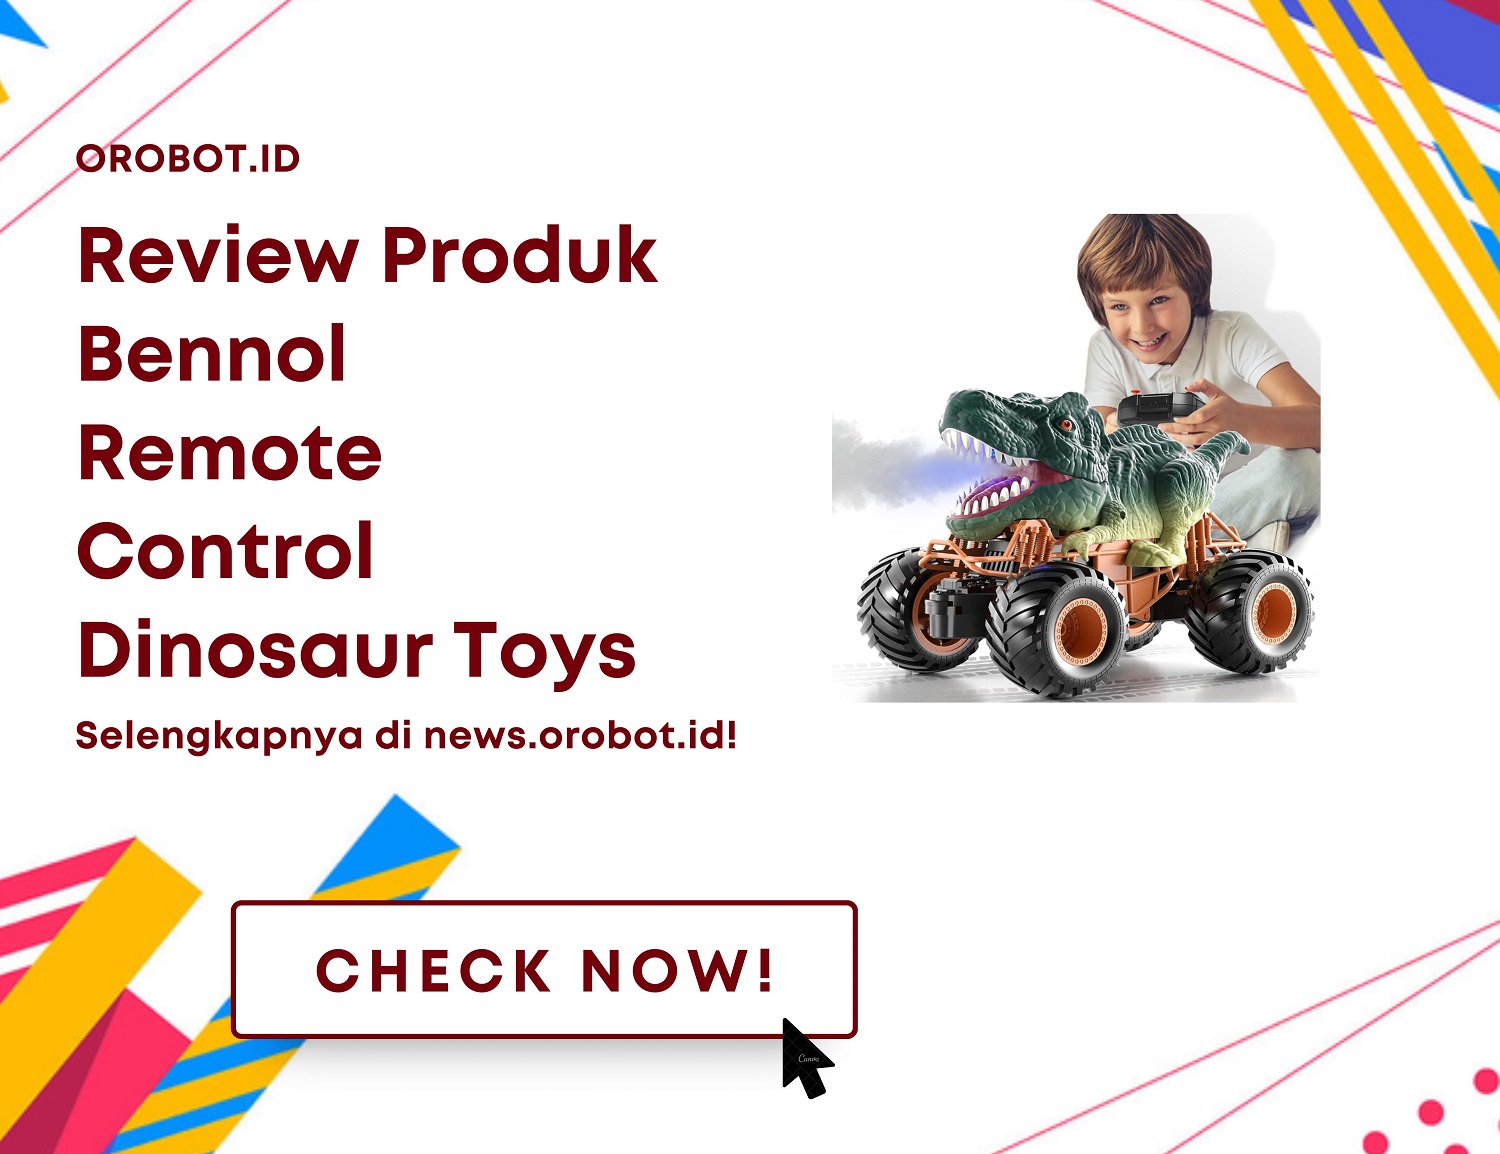 Review Bennol Remote Control Dinosaur Toys, Si Robot Serba Bisa